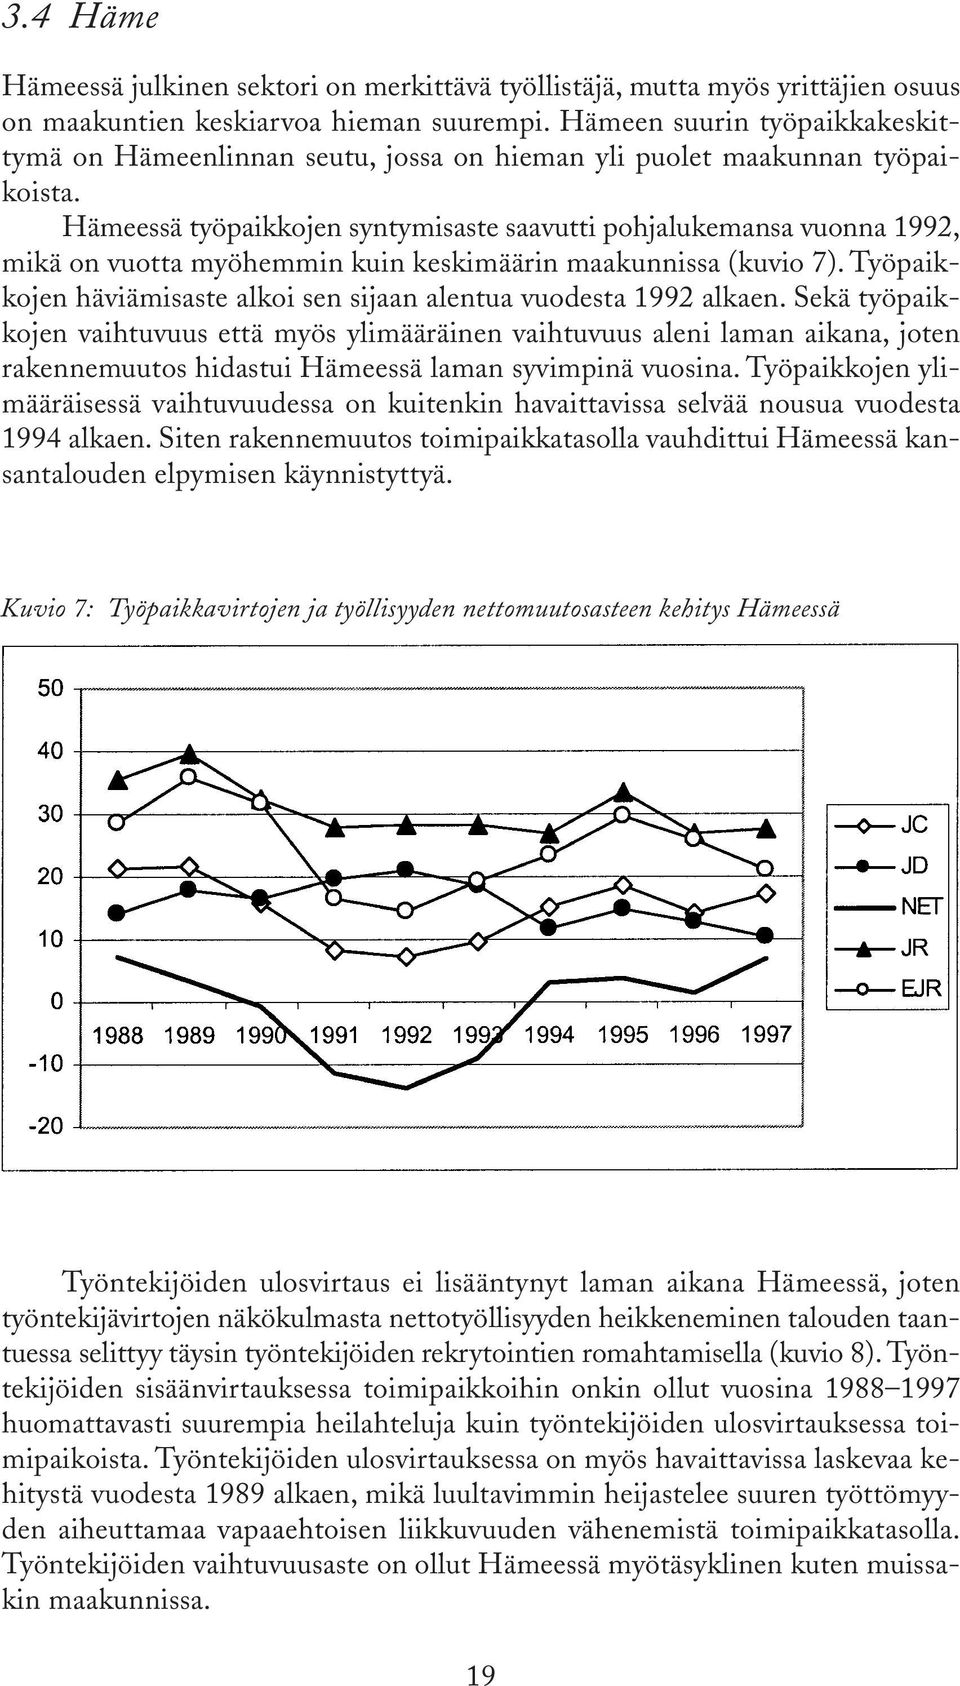 Hämeessä työpaikkojen syntymisaste saavutti pohjalukemansa vuonna 1992, mikä on vuotta myöhemmin kuin keskimäärin maakunnissa (kuvio 7).